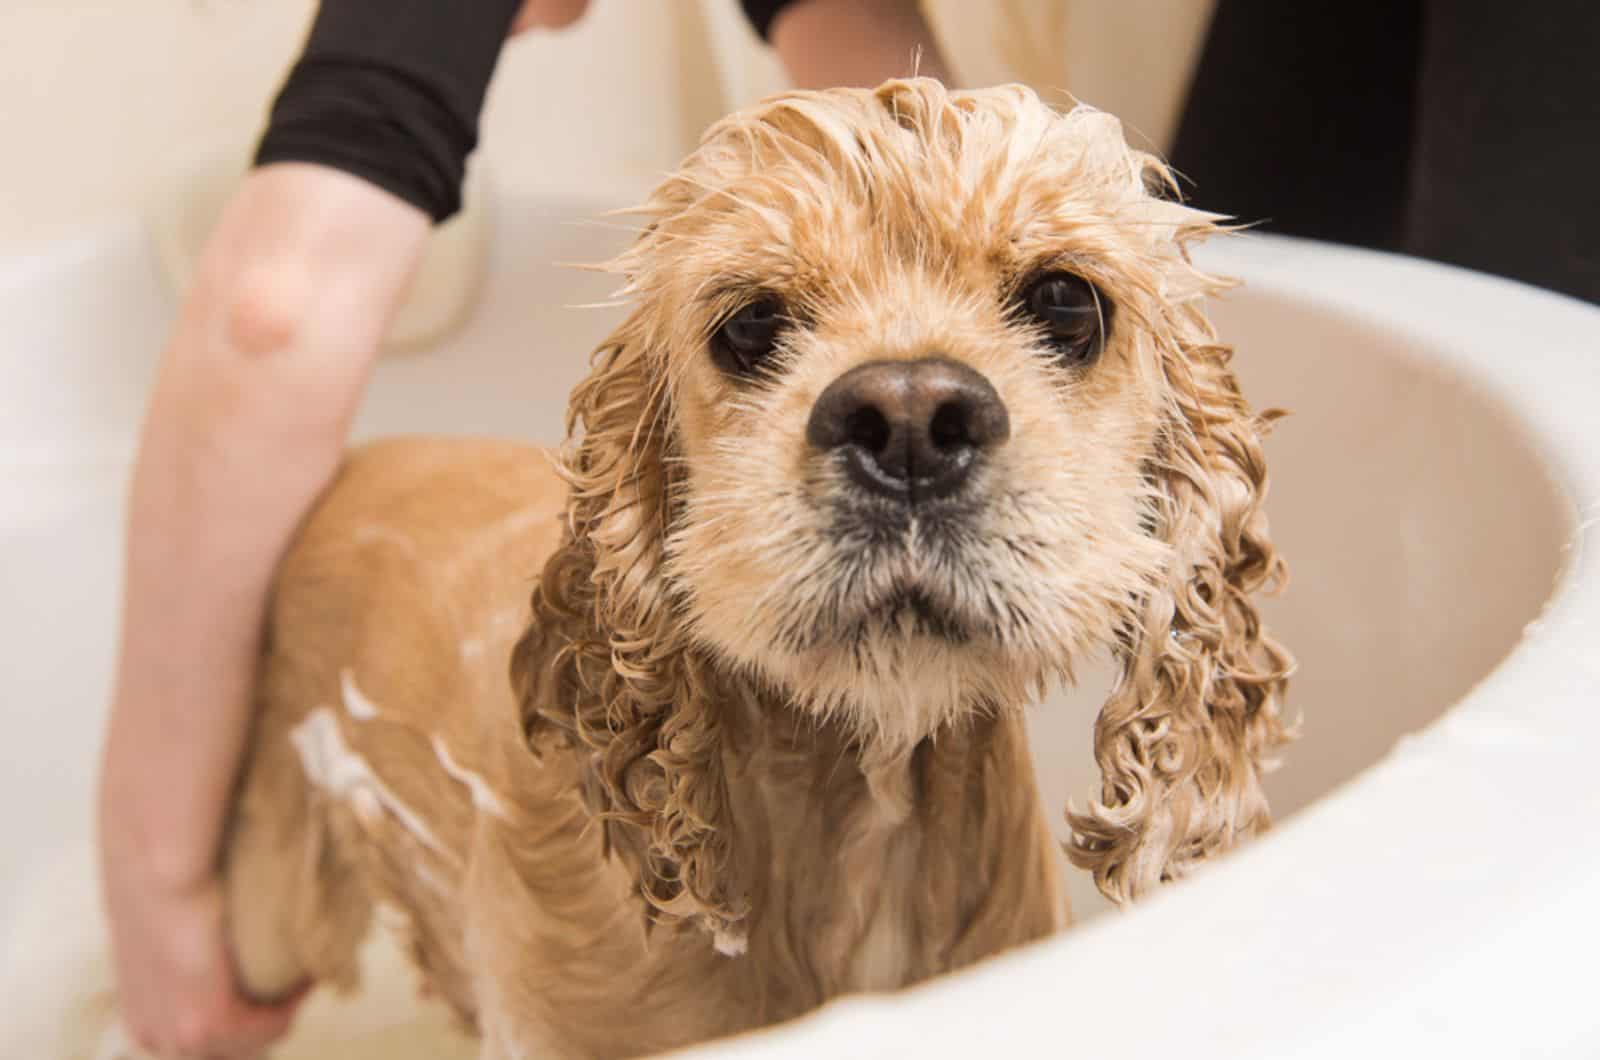 wet dog having a bath